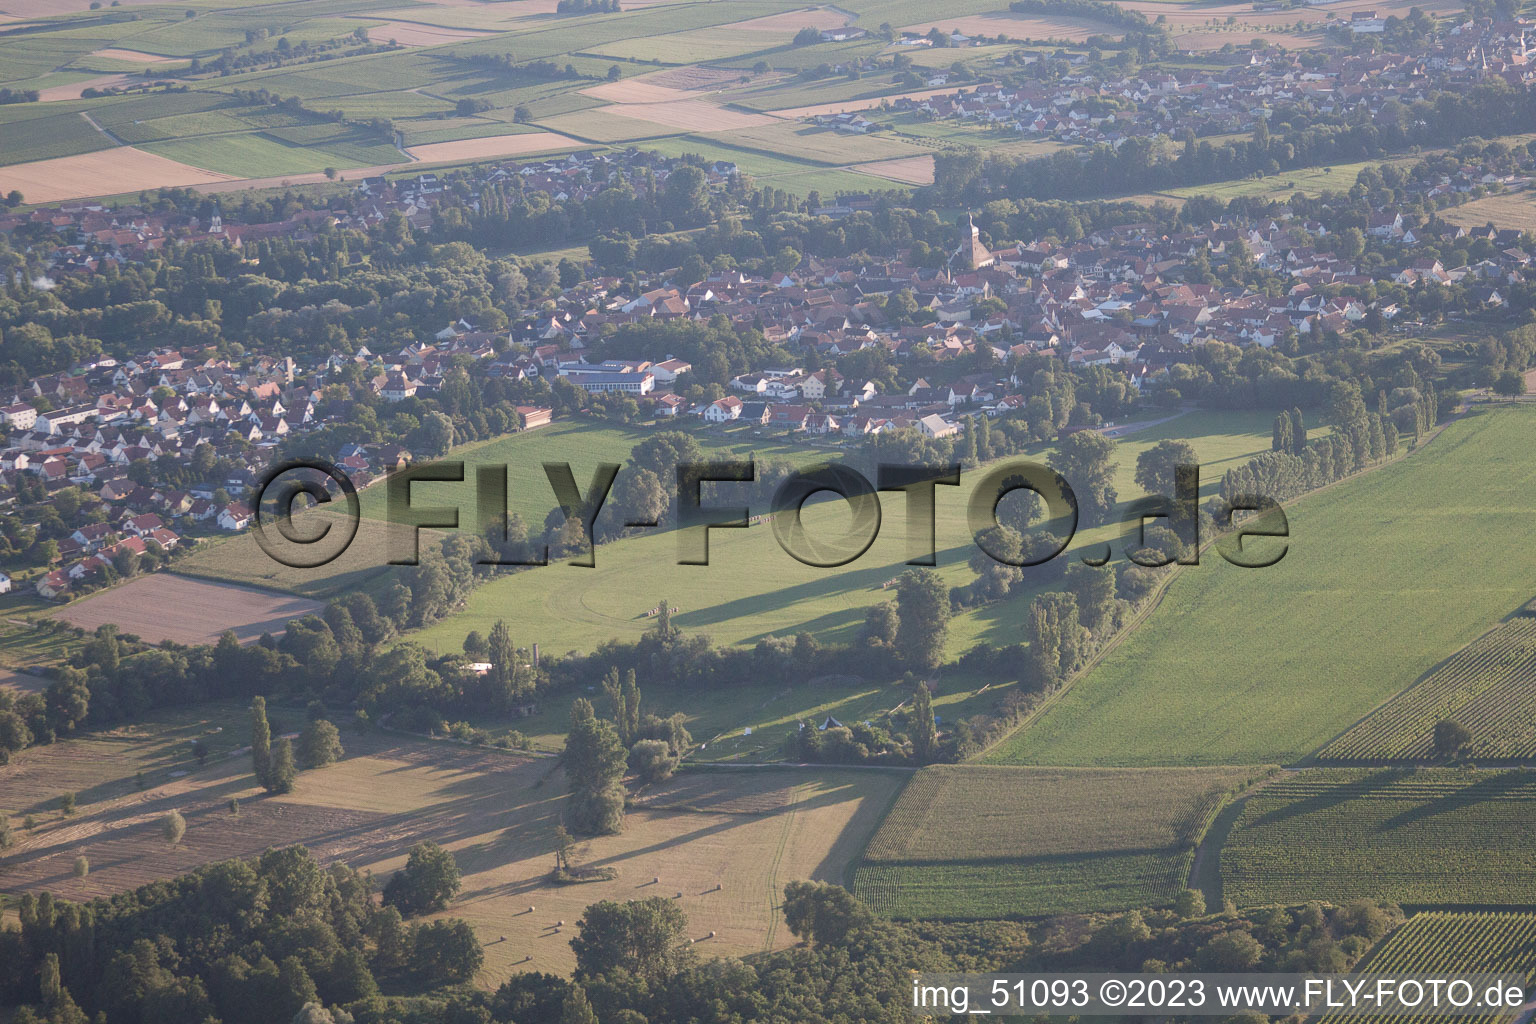 Ortsteil Billigheim in Billigheim-Ingenheim im Bundesland Rheinland-Pfalz, Deutschland aus der Drohnenperspektive